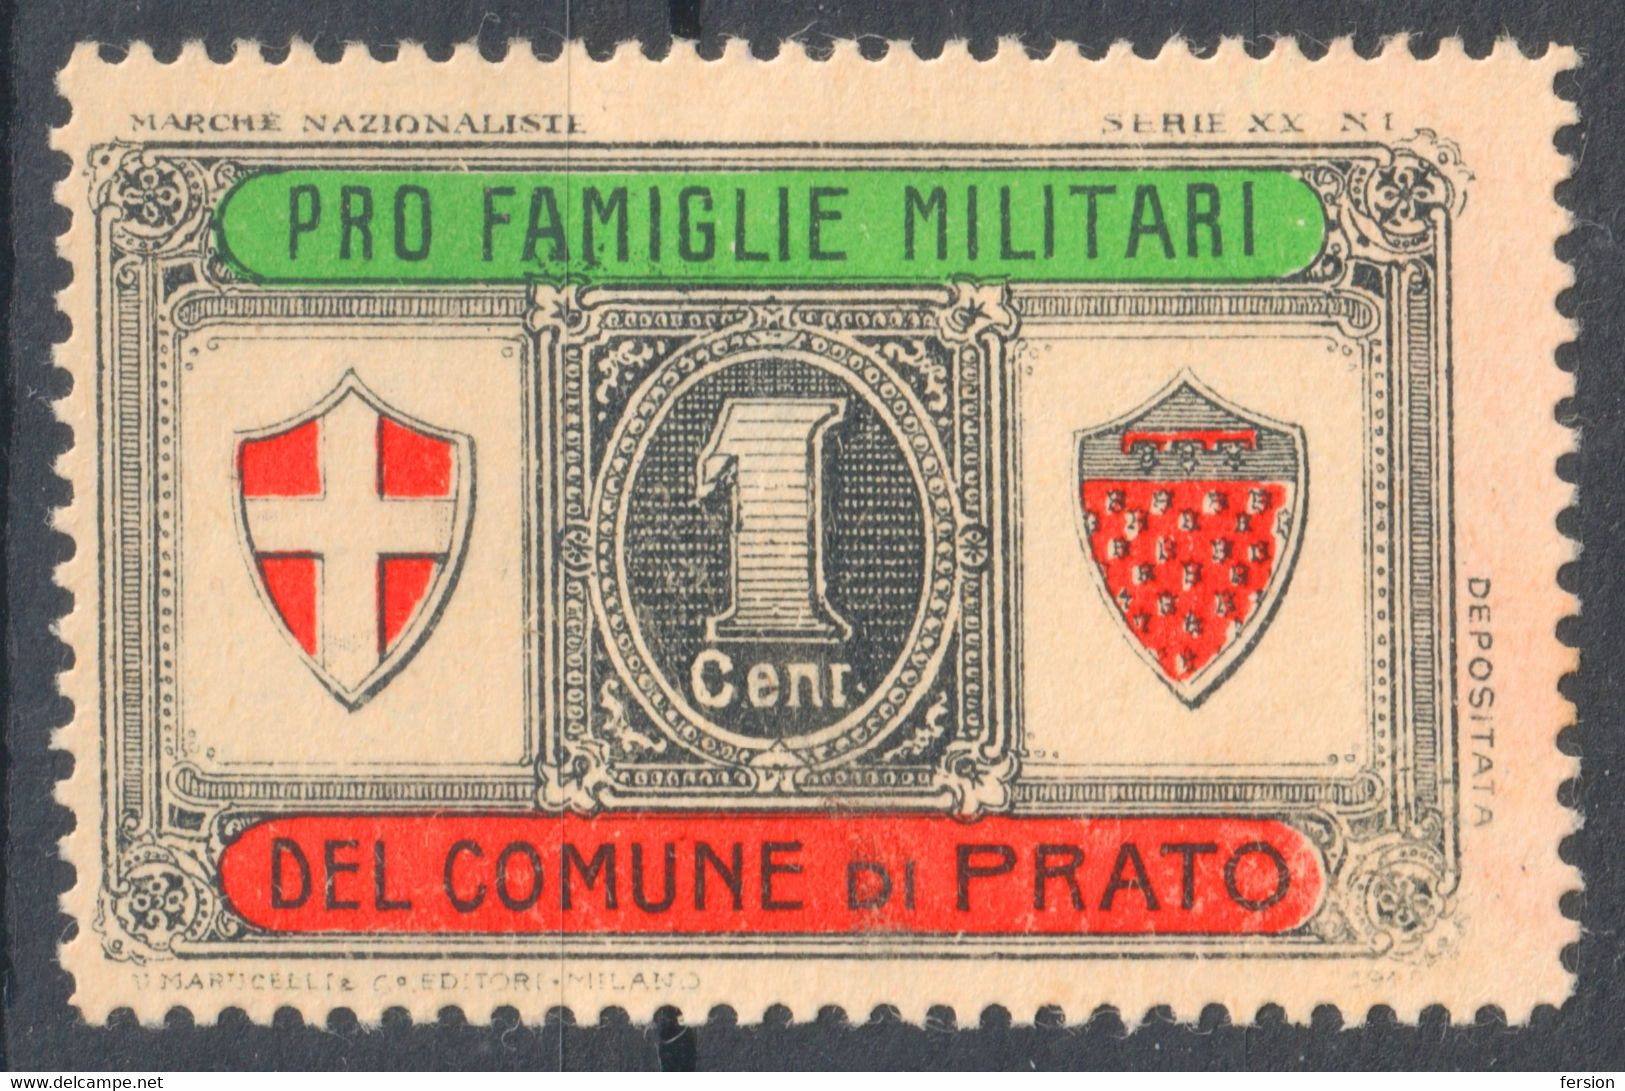 Comune Prato City - WW1 World War Military Charity Label Cinderella Vignette 1914 ITALY Pro Famiglie Military - Propagande De Guerre